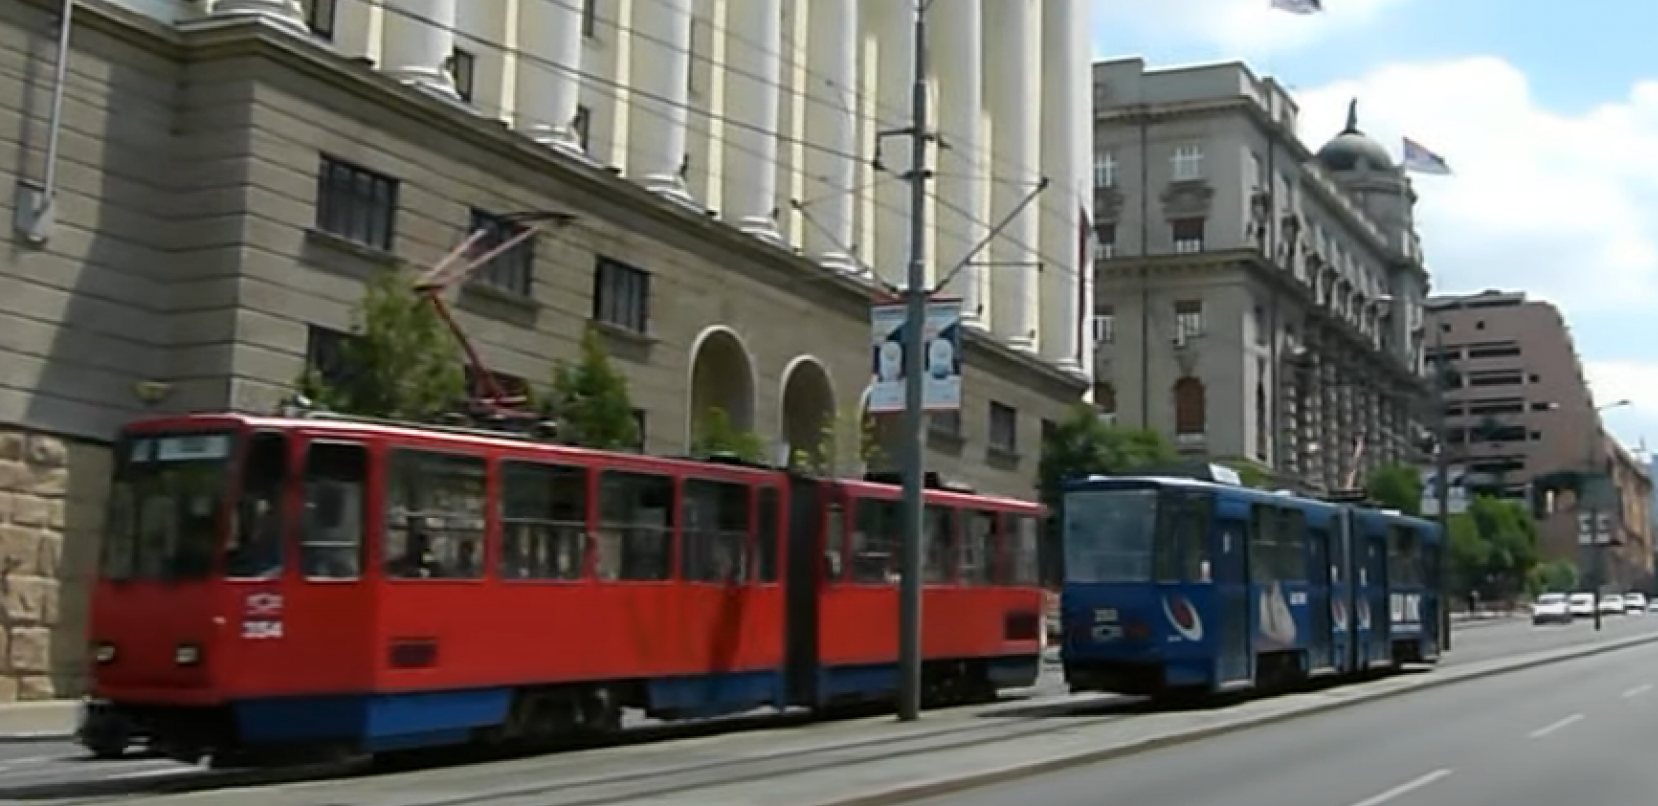 IZMENE U GRADSKOM SAOBRAĆAJU Najavljeni radovi u Beogradu: Tramvaji neće saobraćati ovim deonicama